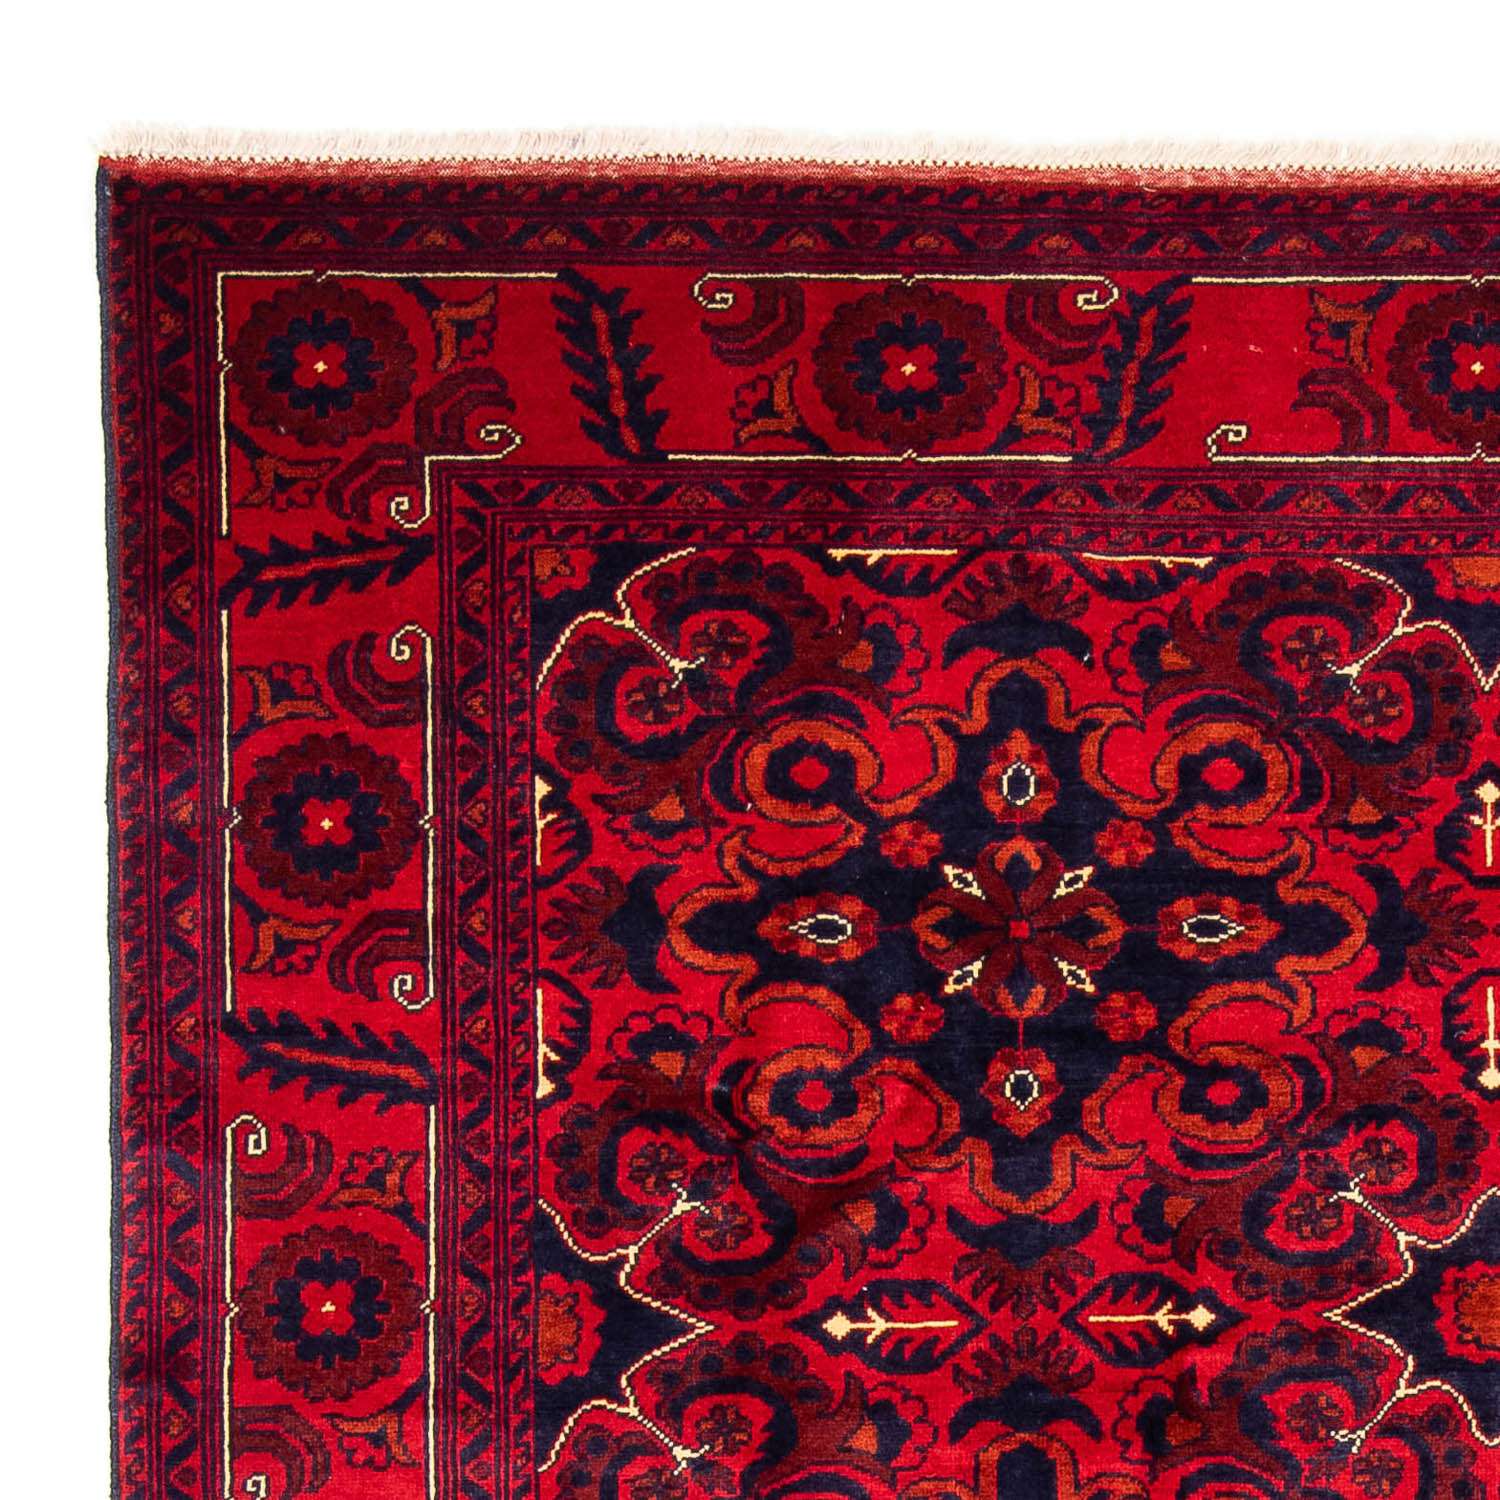 Tappeto afgano - Kunduz - 282 x 200 cm - rosso scuro